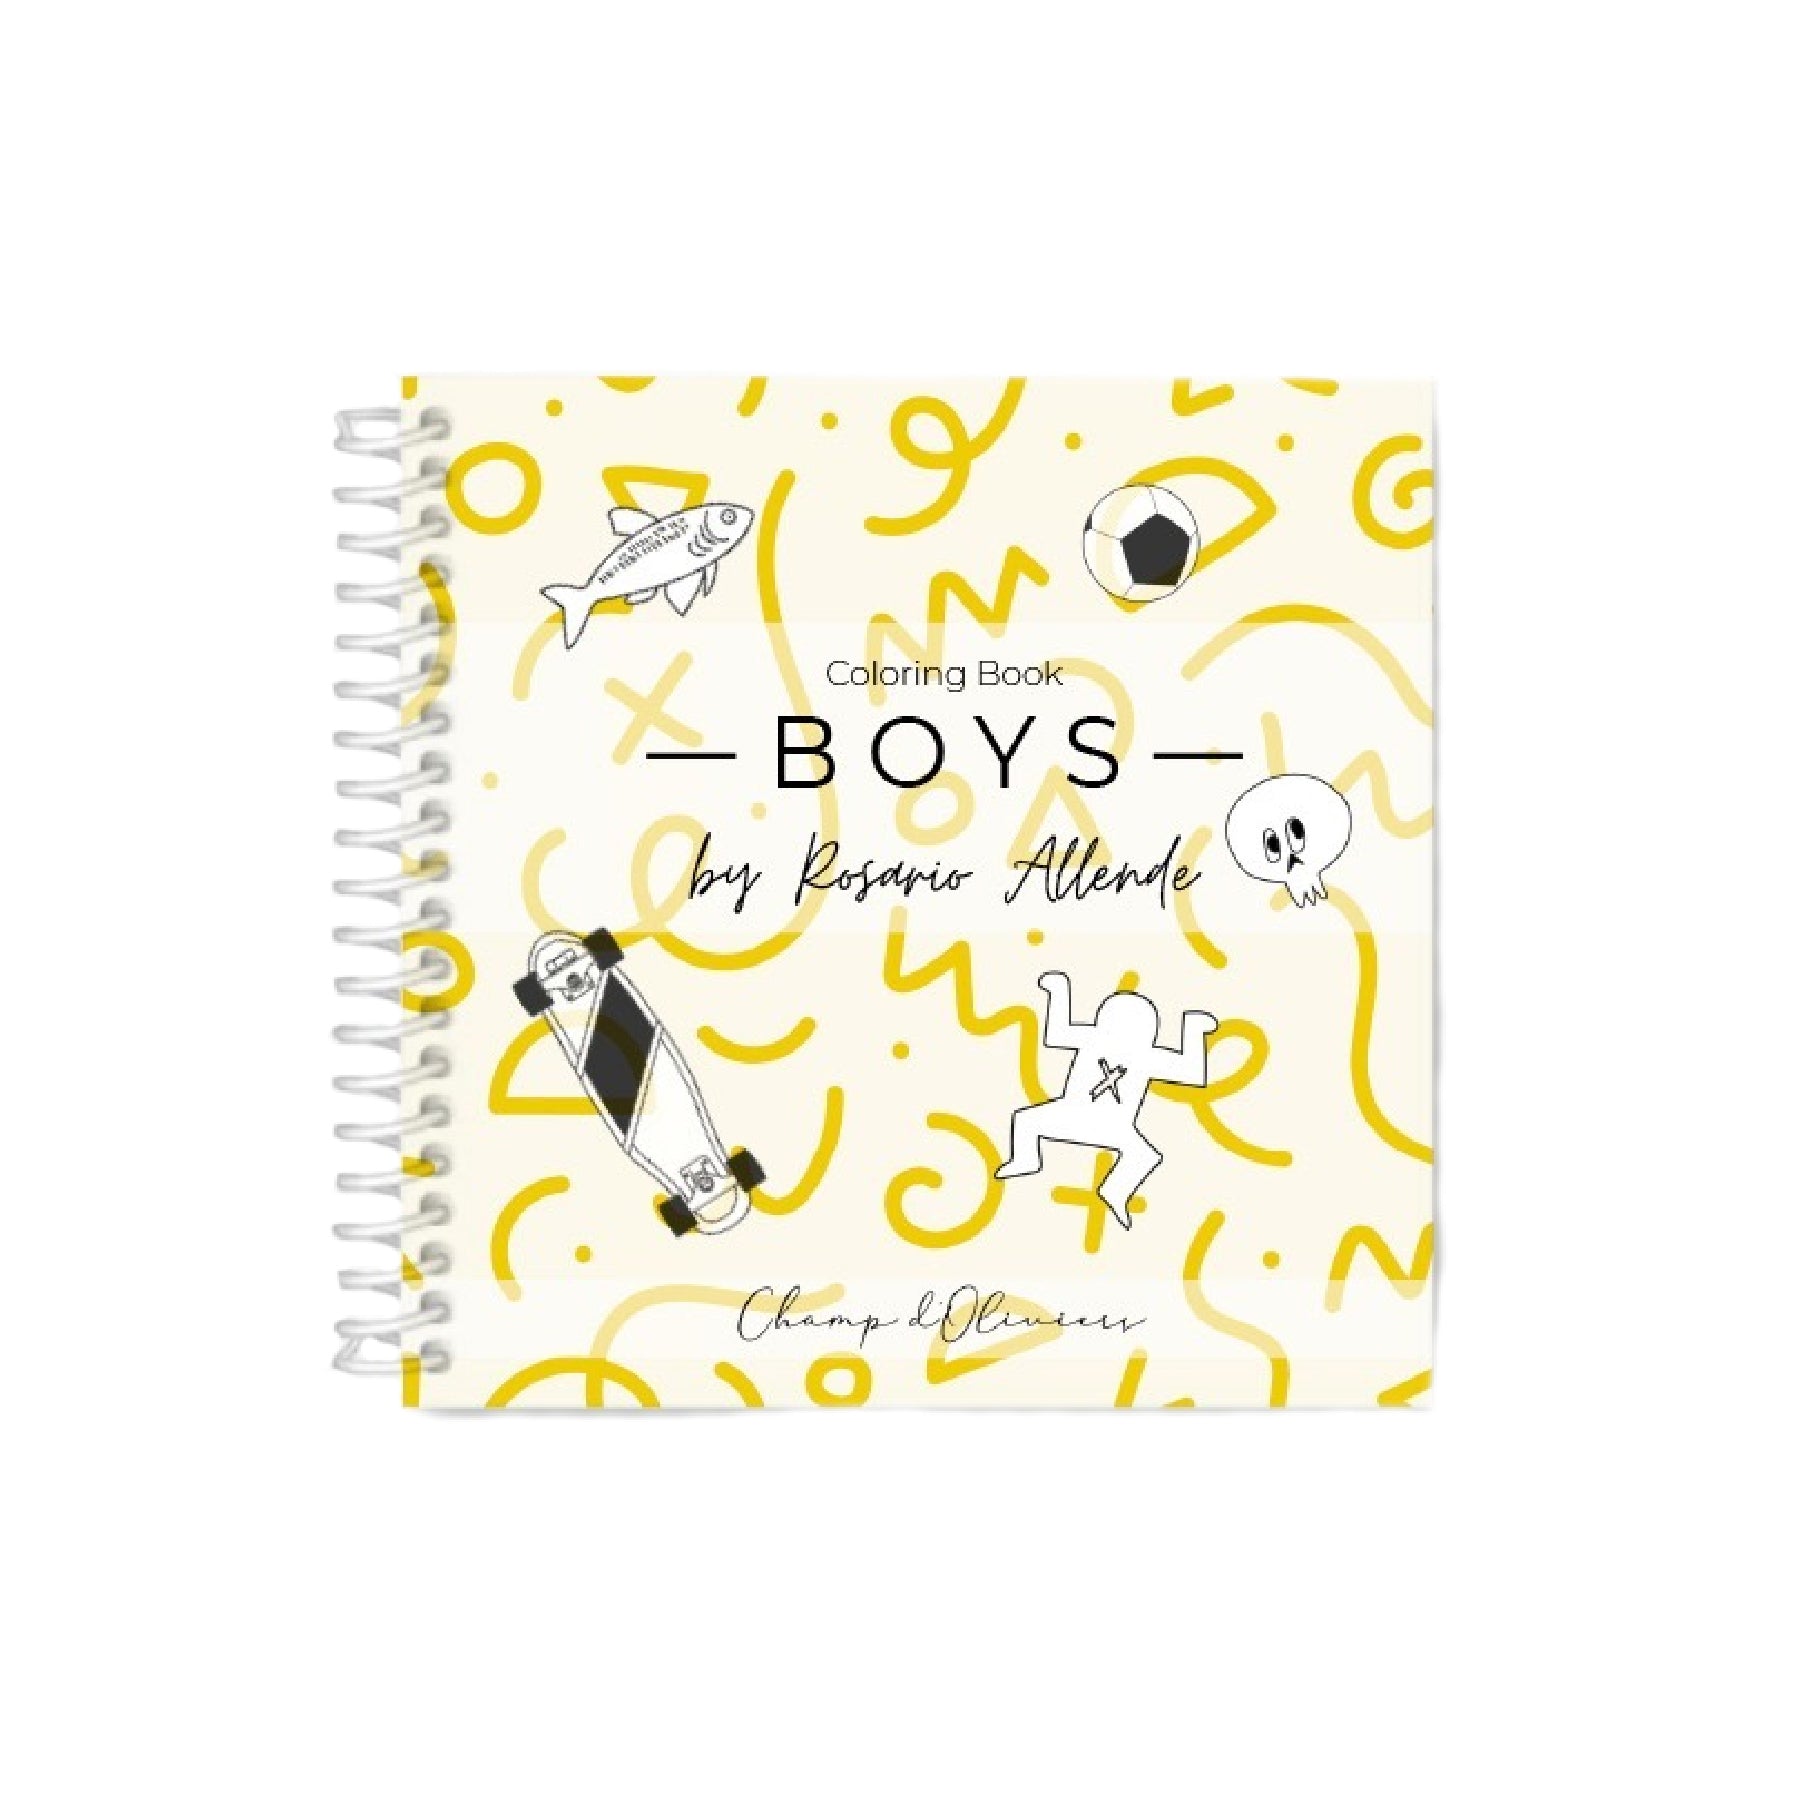 Boys - libro para pintar